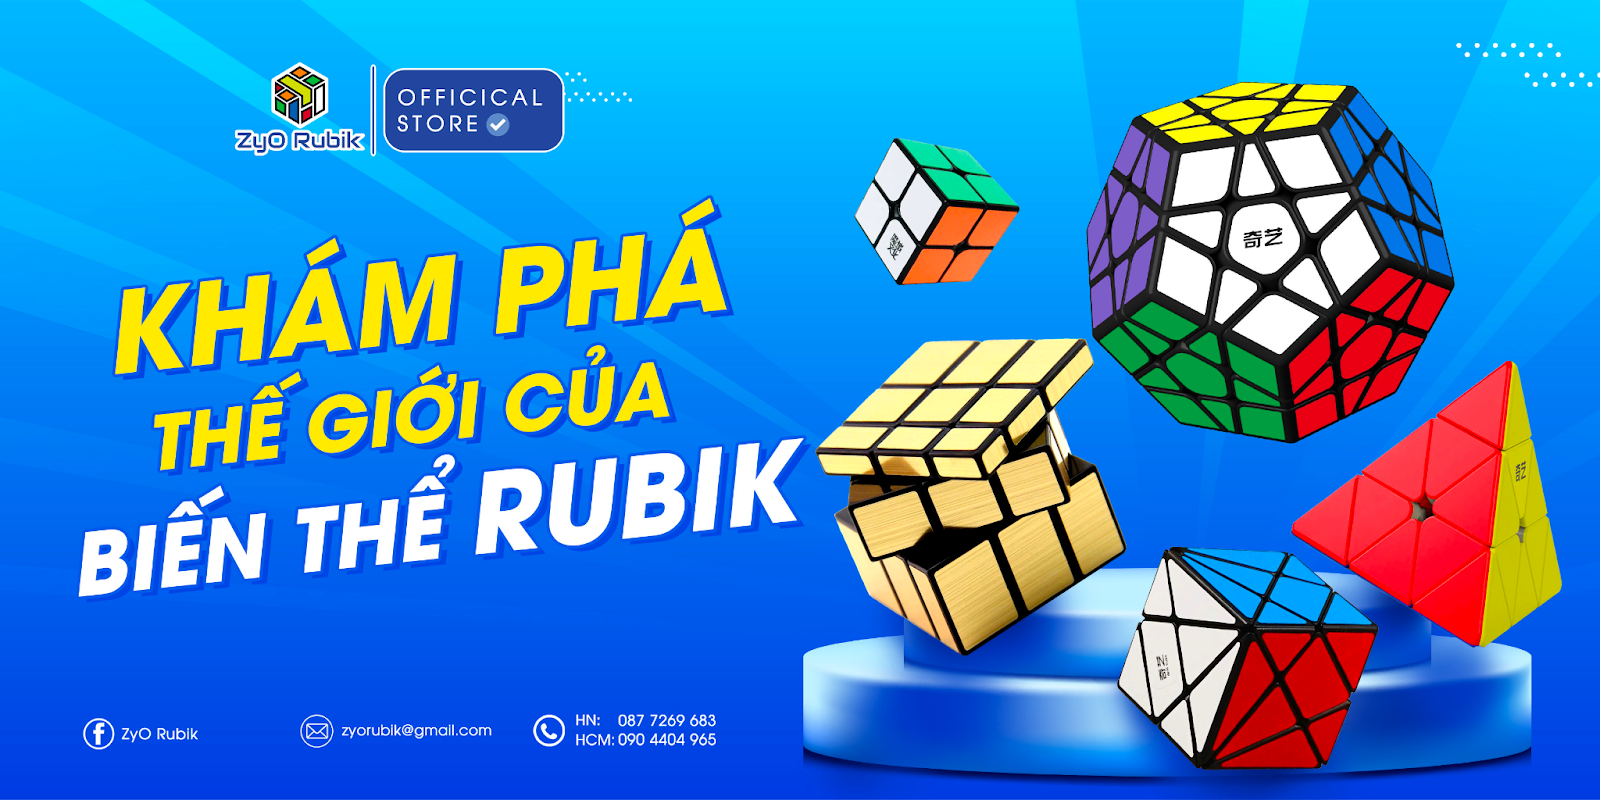 Khám phá Thế Giới Của Biến Thể Rubik: Hấp Dẫn và Đa Dạng